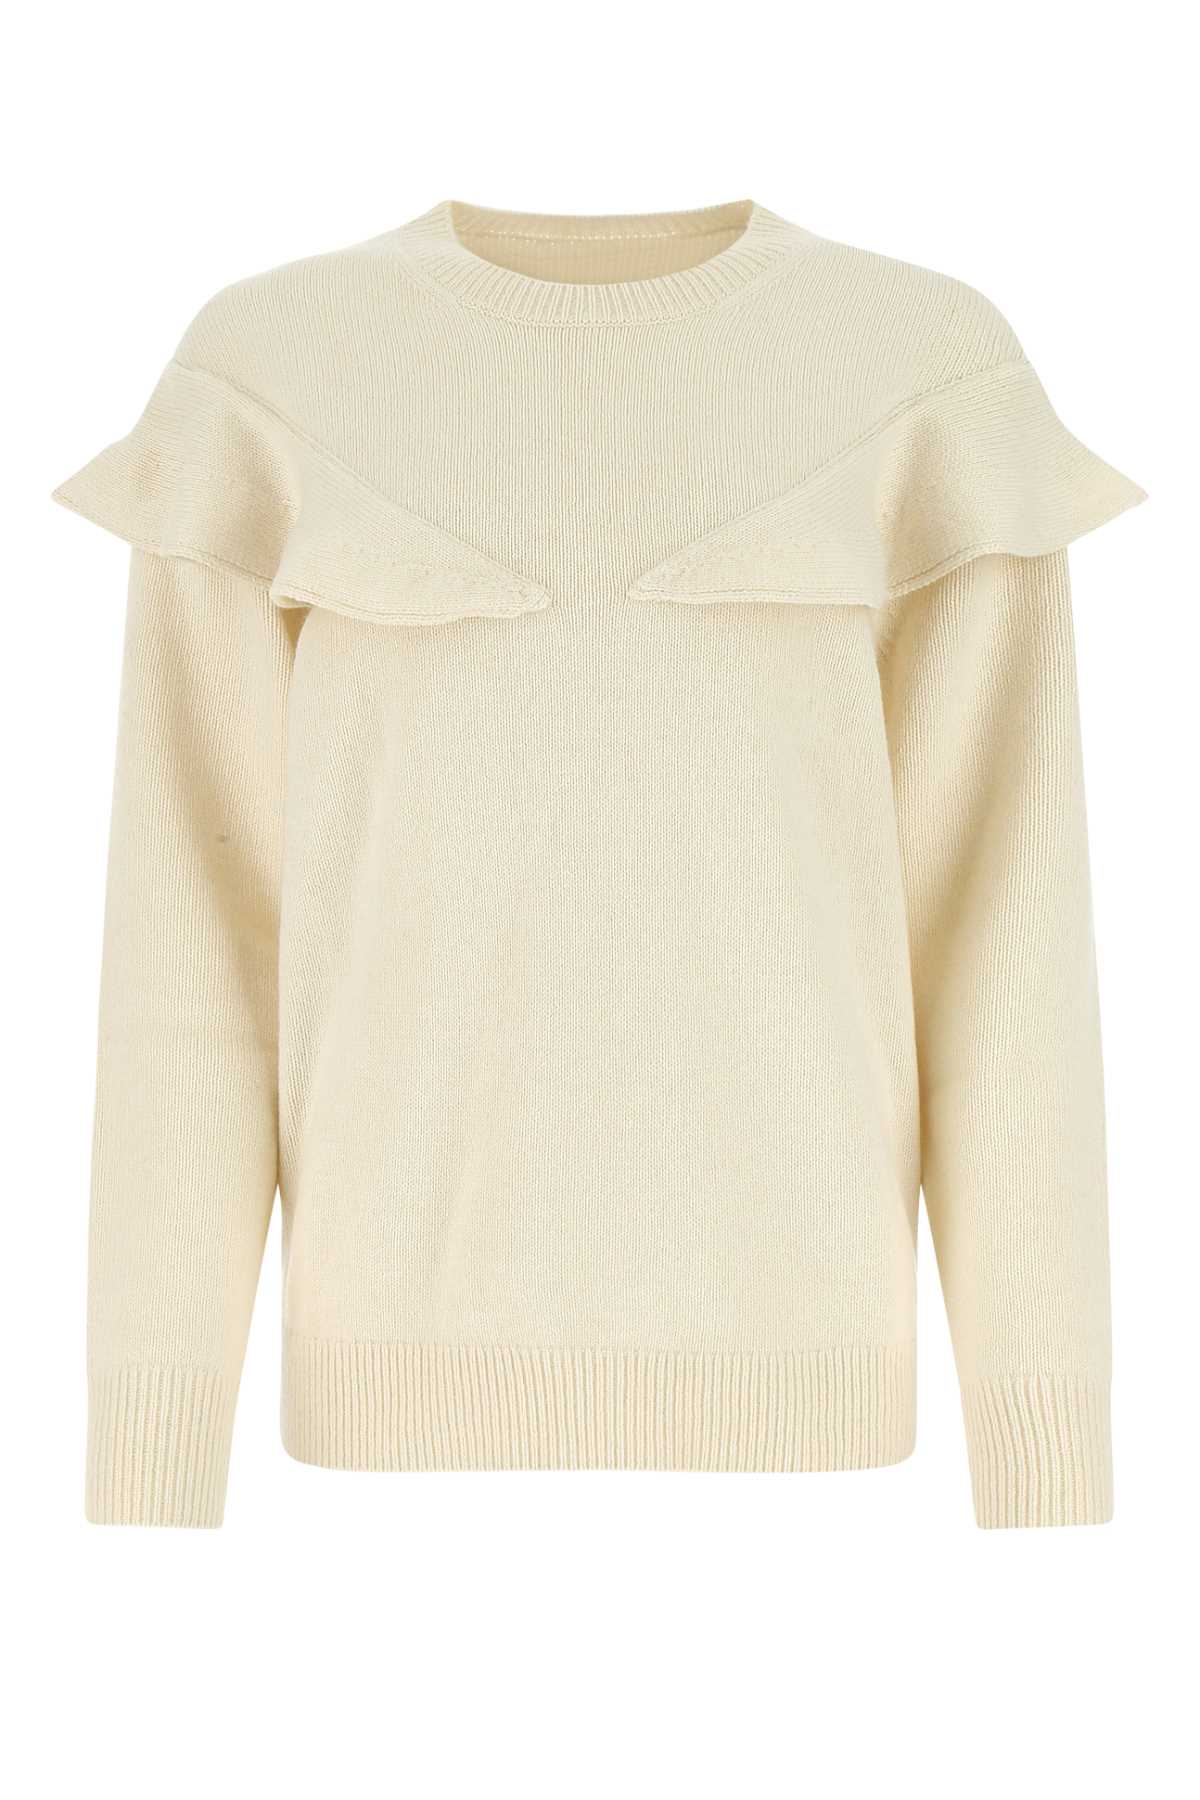 Chloé Ivory Cashmere Oversize Sweater